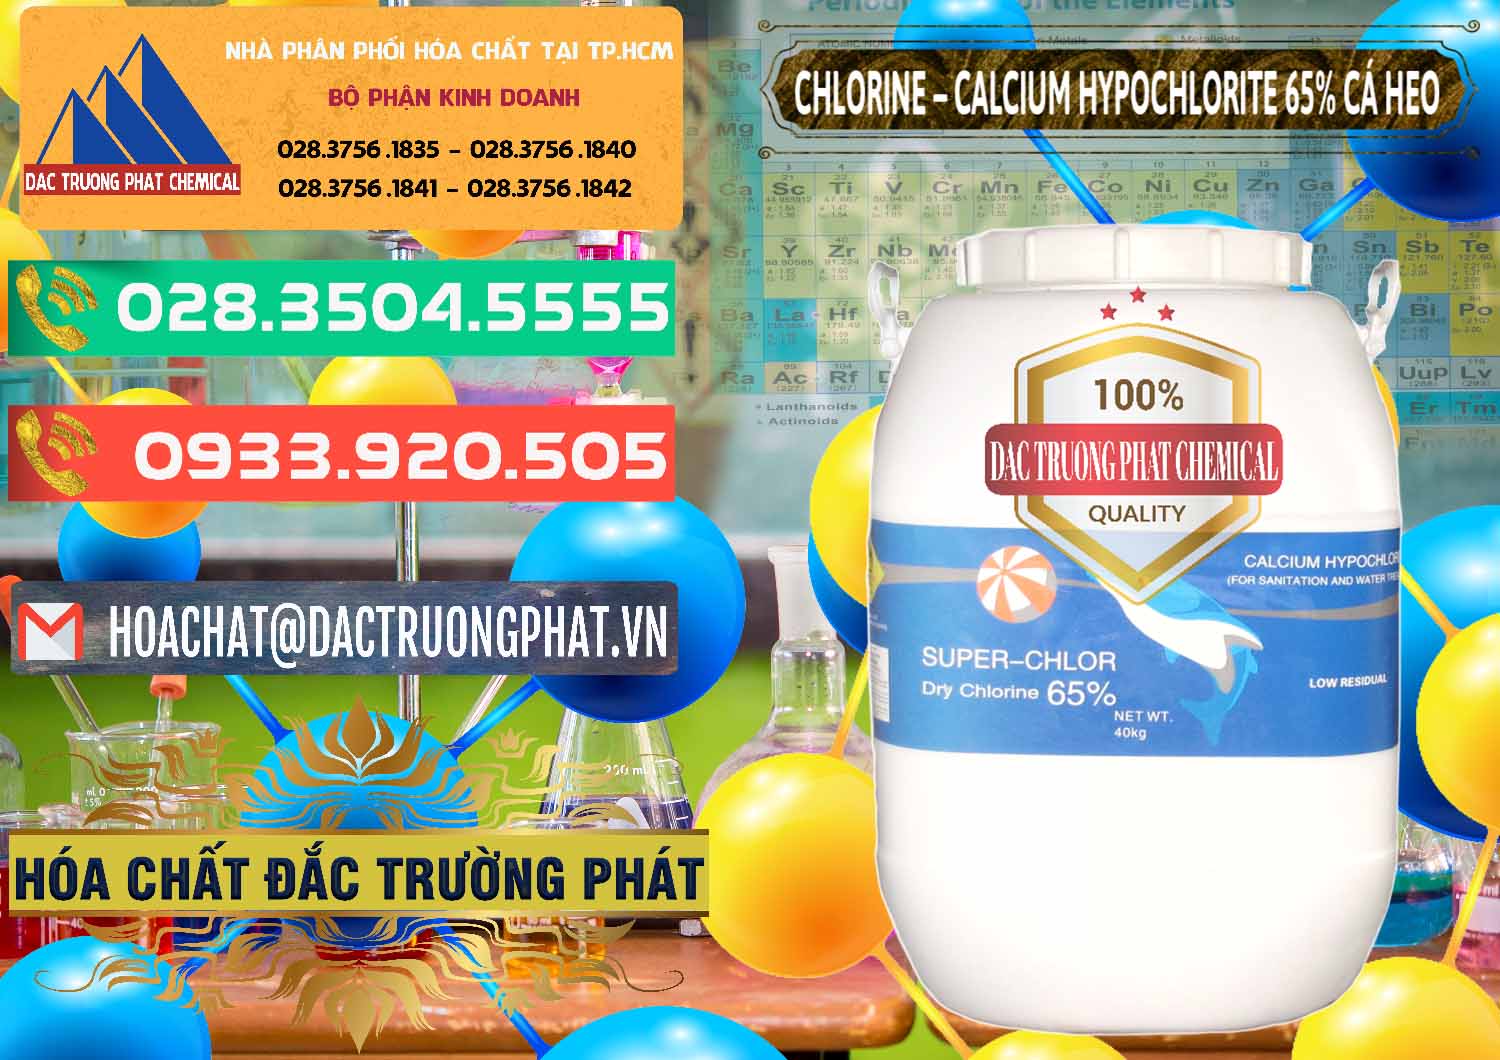 Cty chuyên kinh doanh & bán Clorin - Chlorine Cá Heo 65% Trung Quốc China - 0053 - Nơi phân phối & cung ứng hóa chất tại TP.HCM - congtyhoachat.com.vn